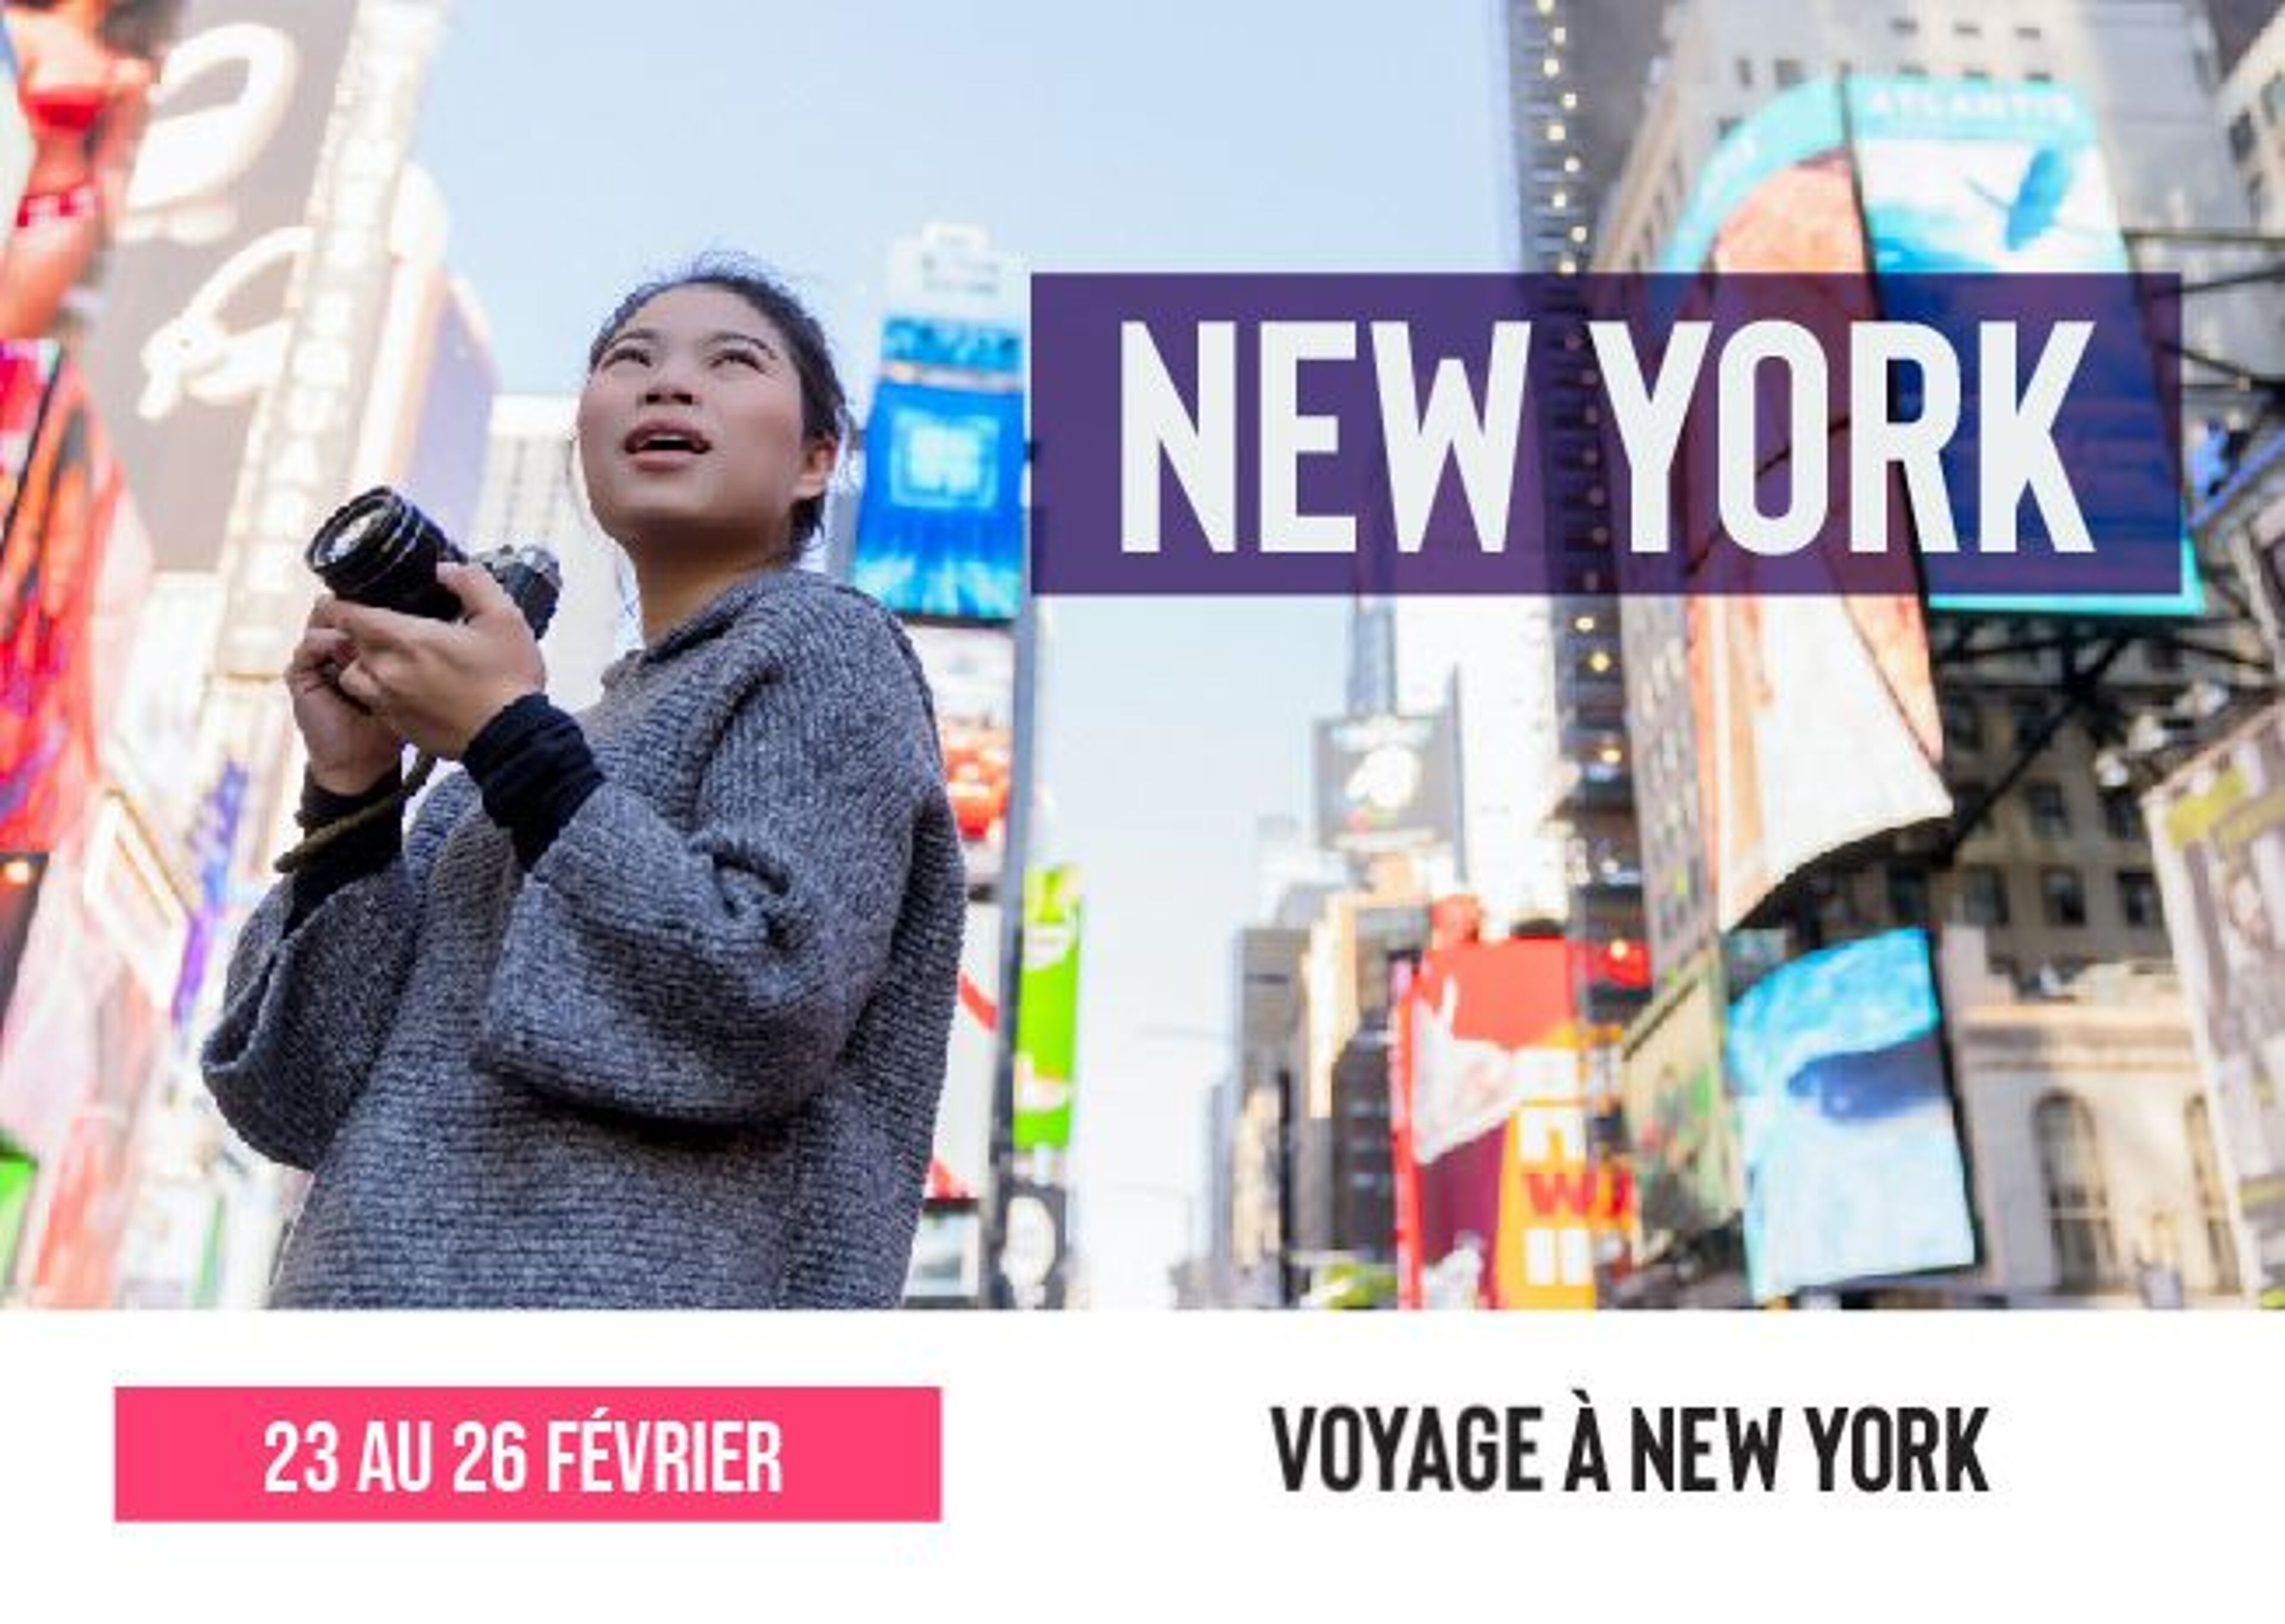 Publicité pour un voyage à New York du 23 au 26 février, avec une femme prenant des photos à Times Square.